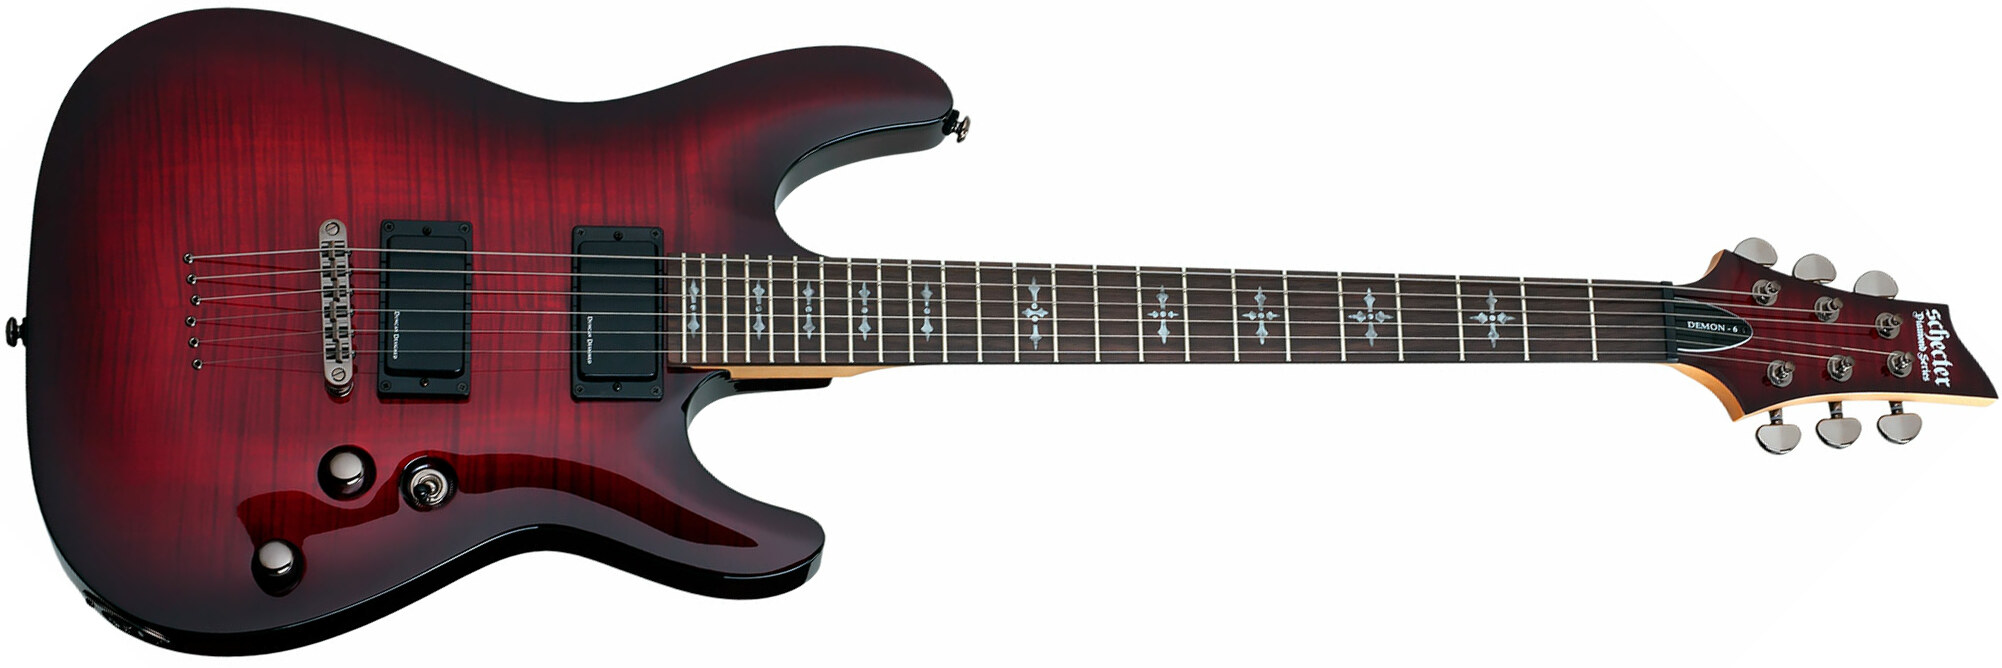 Schecter Demon-6 2h Ht Rw - Crimson Red Burst - E-Gitarre in Str-Form - Main picture